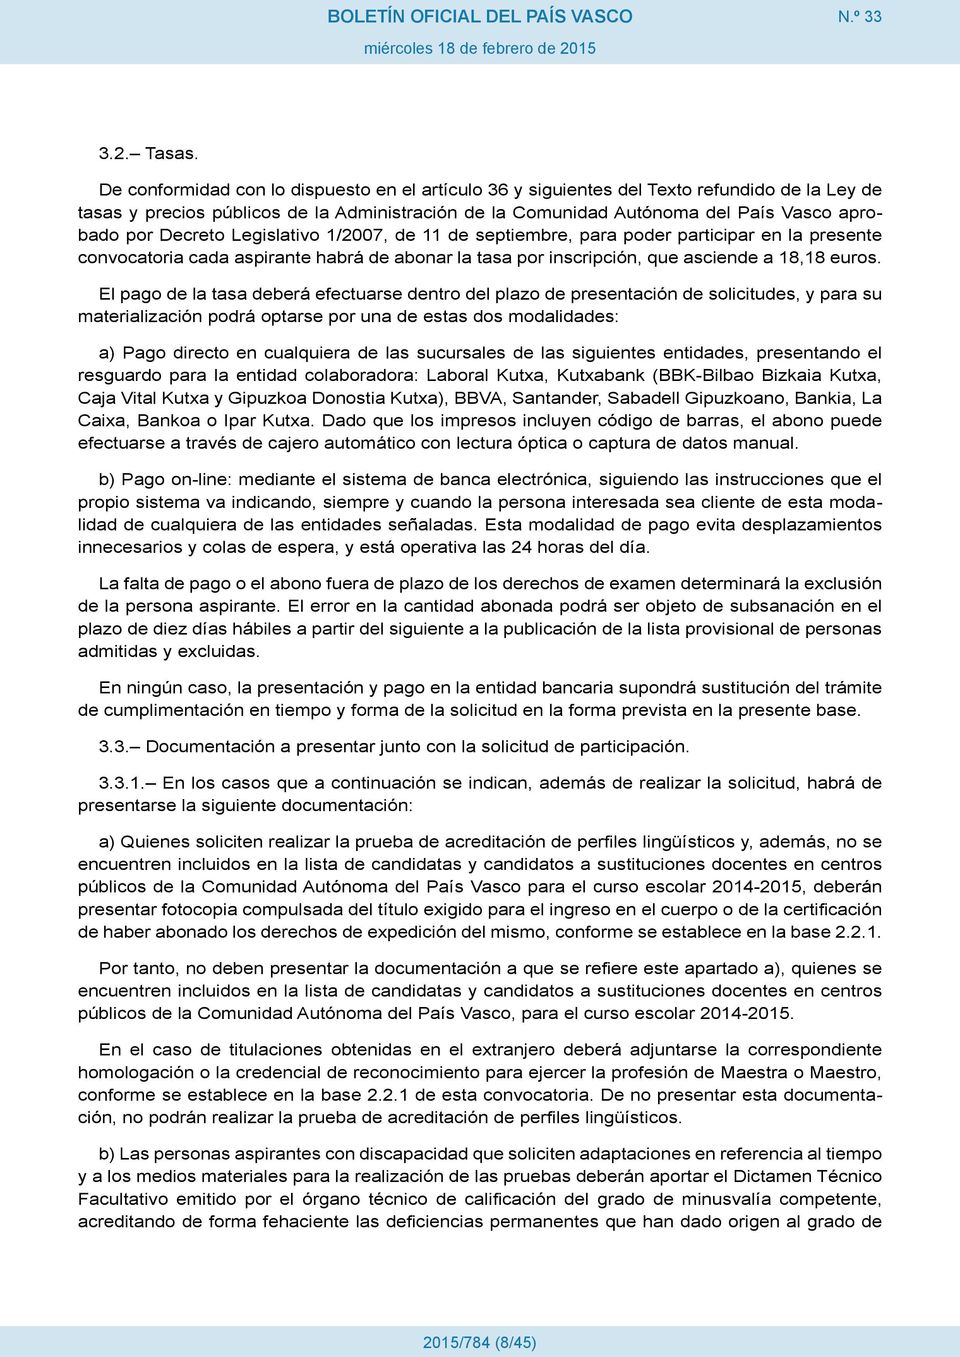 Decreto Legislativo 1/2007, de 11 de septiembre, para poder participar en la presente convocatoria cada aspirante habrá de abonar la tasa por inscripción, que asciende a 18,18 euros.